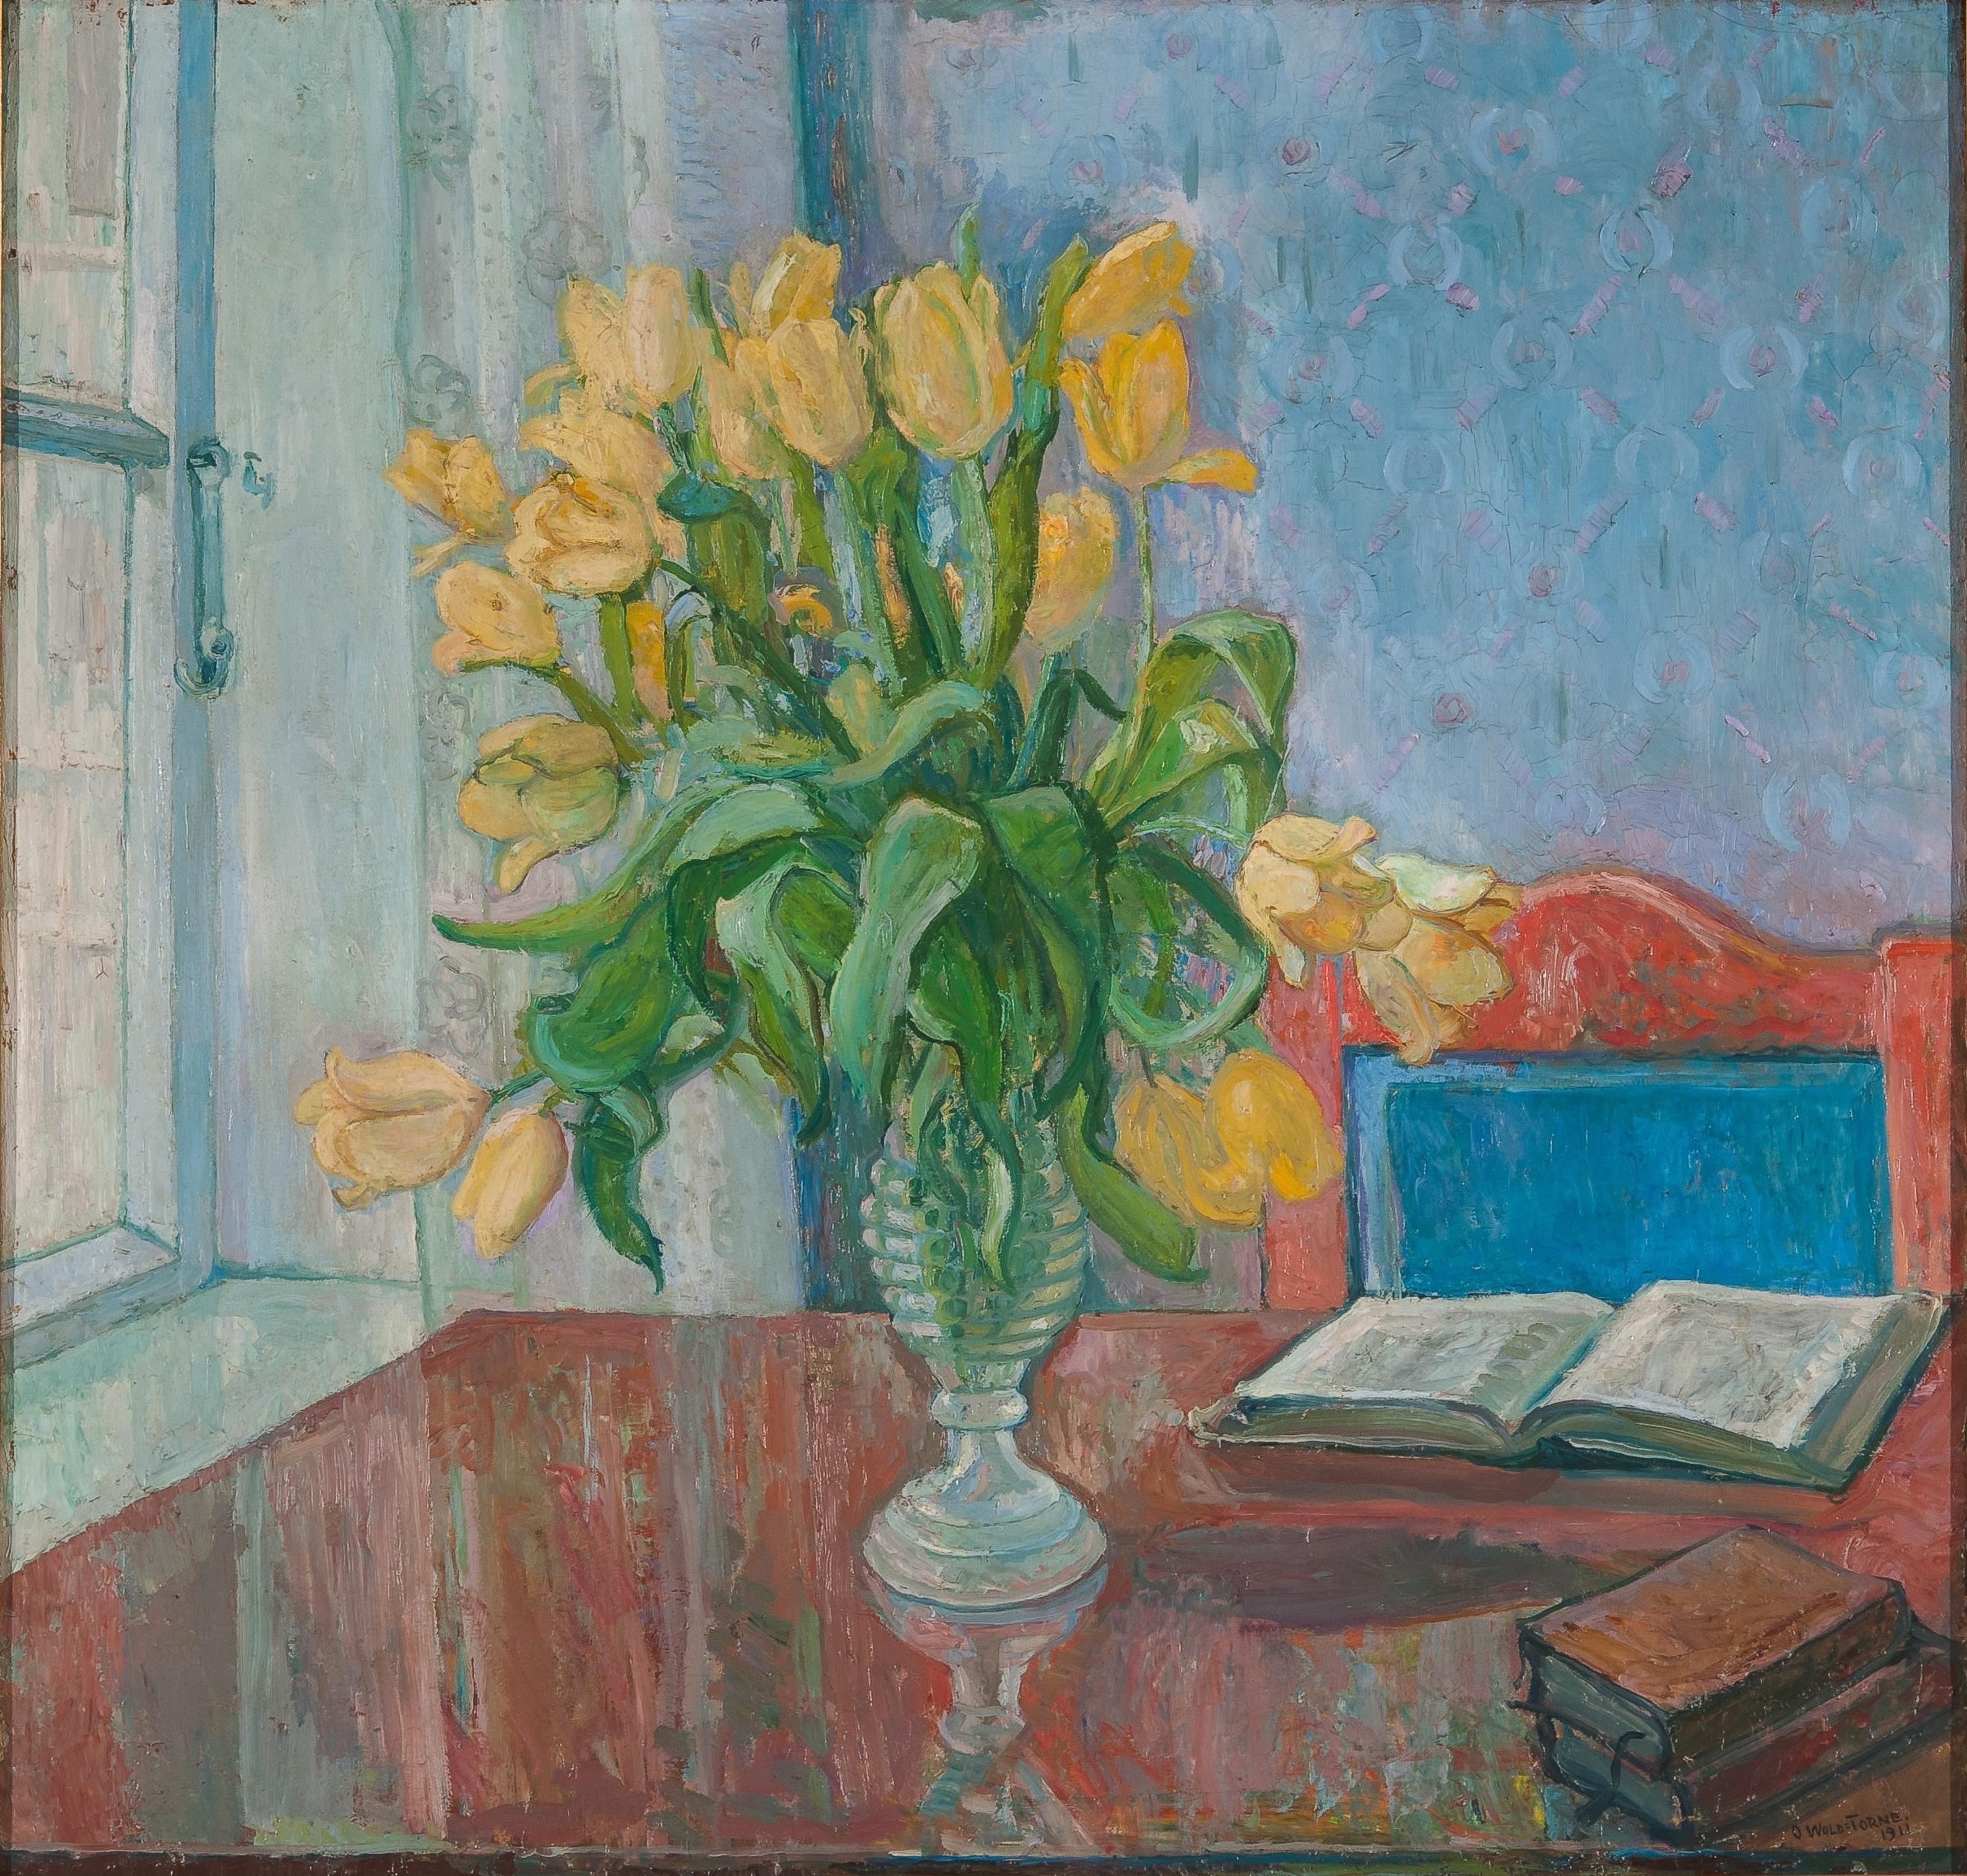 Maleri av gule tulipaner på et rødt bord foran et vindu